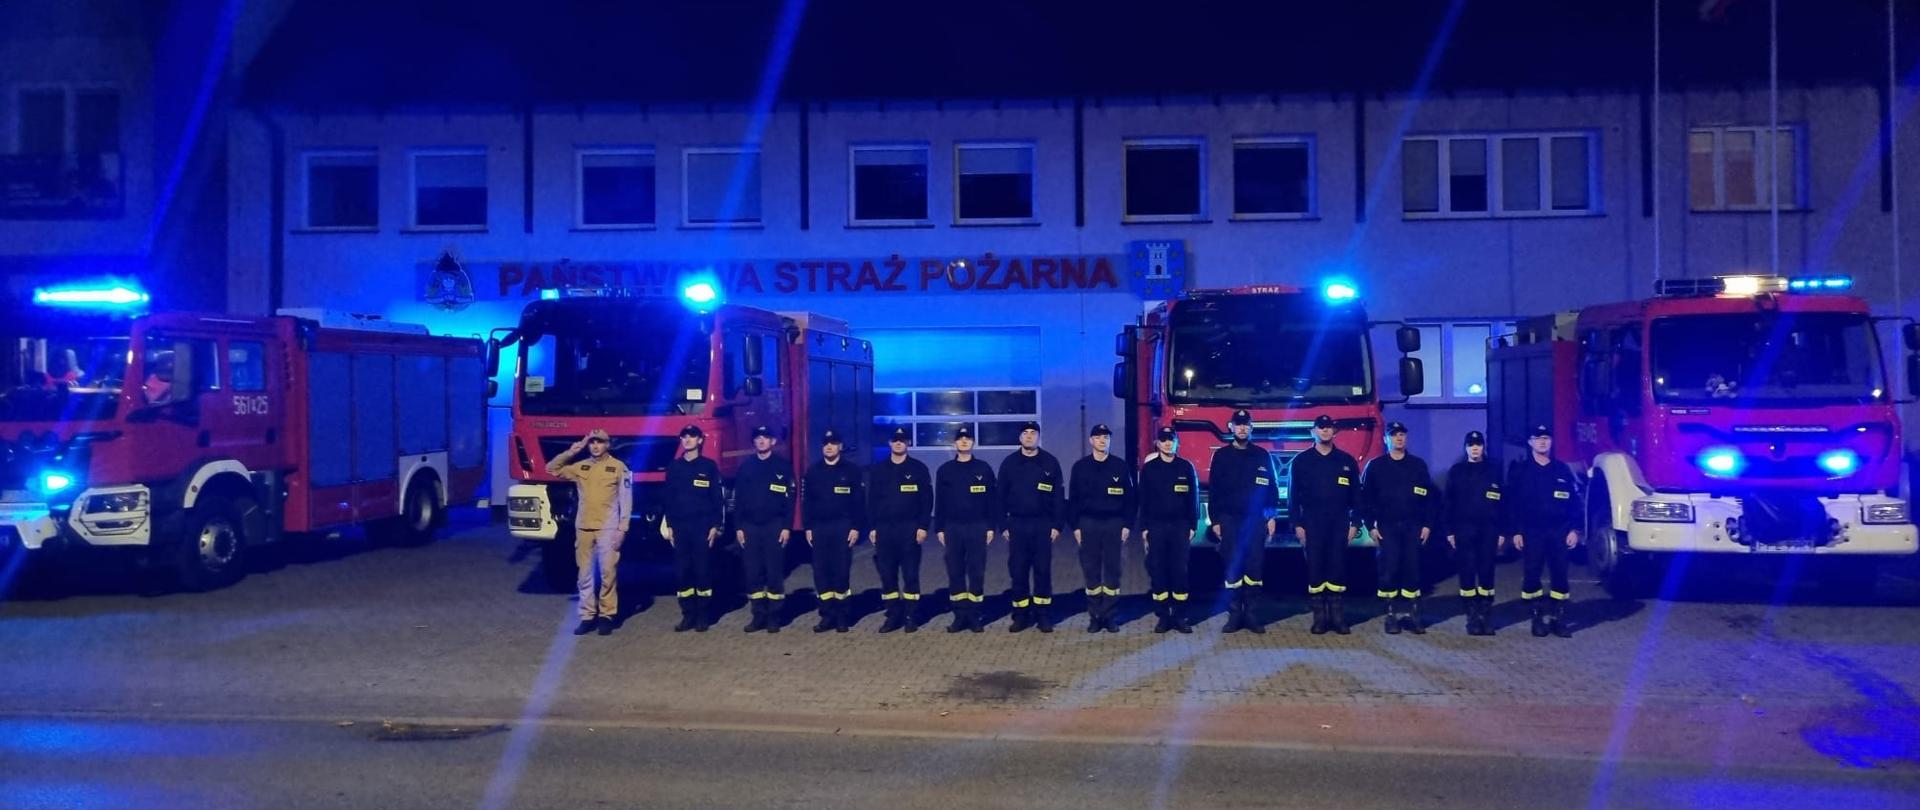 przed remizą strażacka stoją pojazdy z włączonymi sygnałami świetlnymi, przed autami stoją na baczność strażacy, wieczór